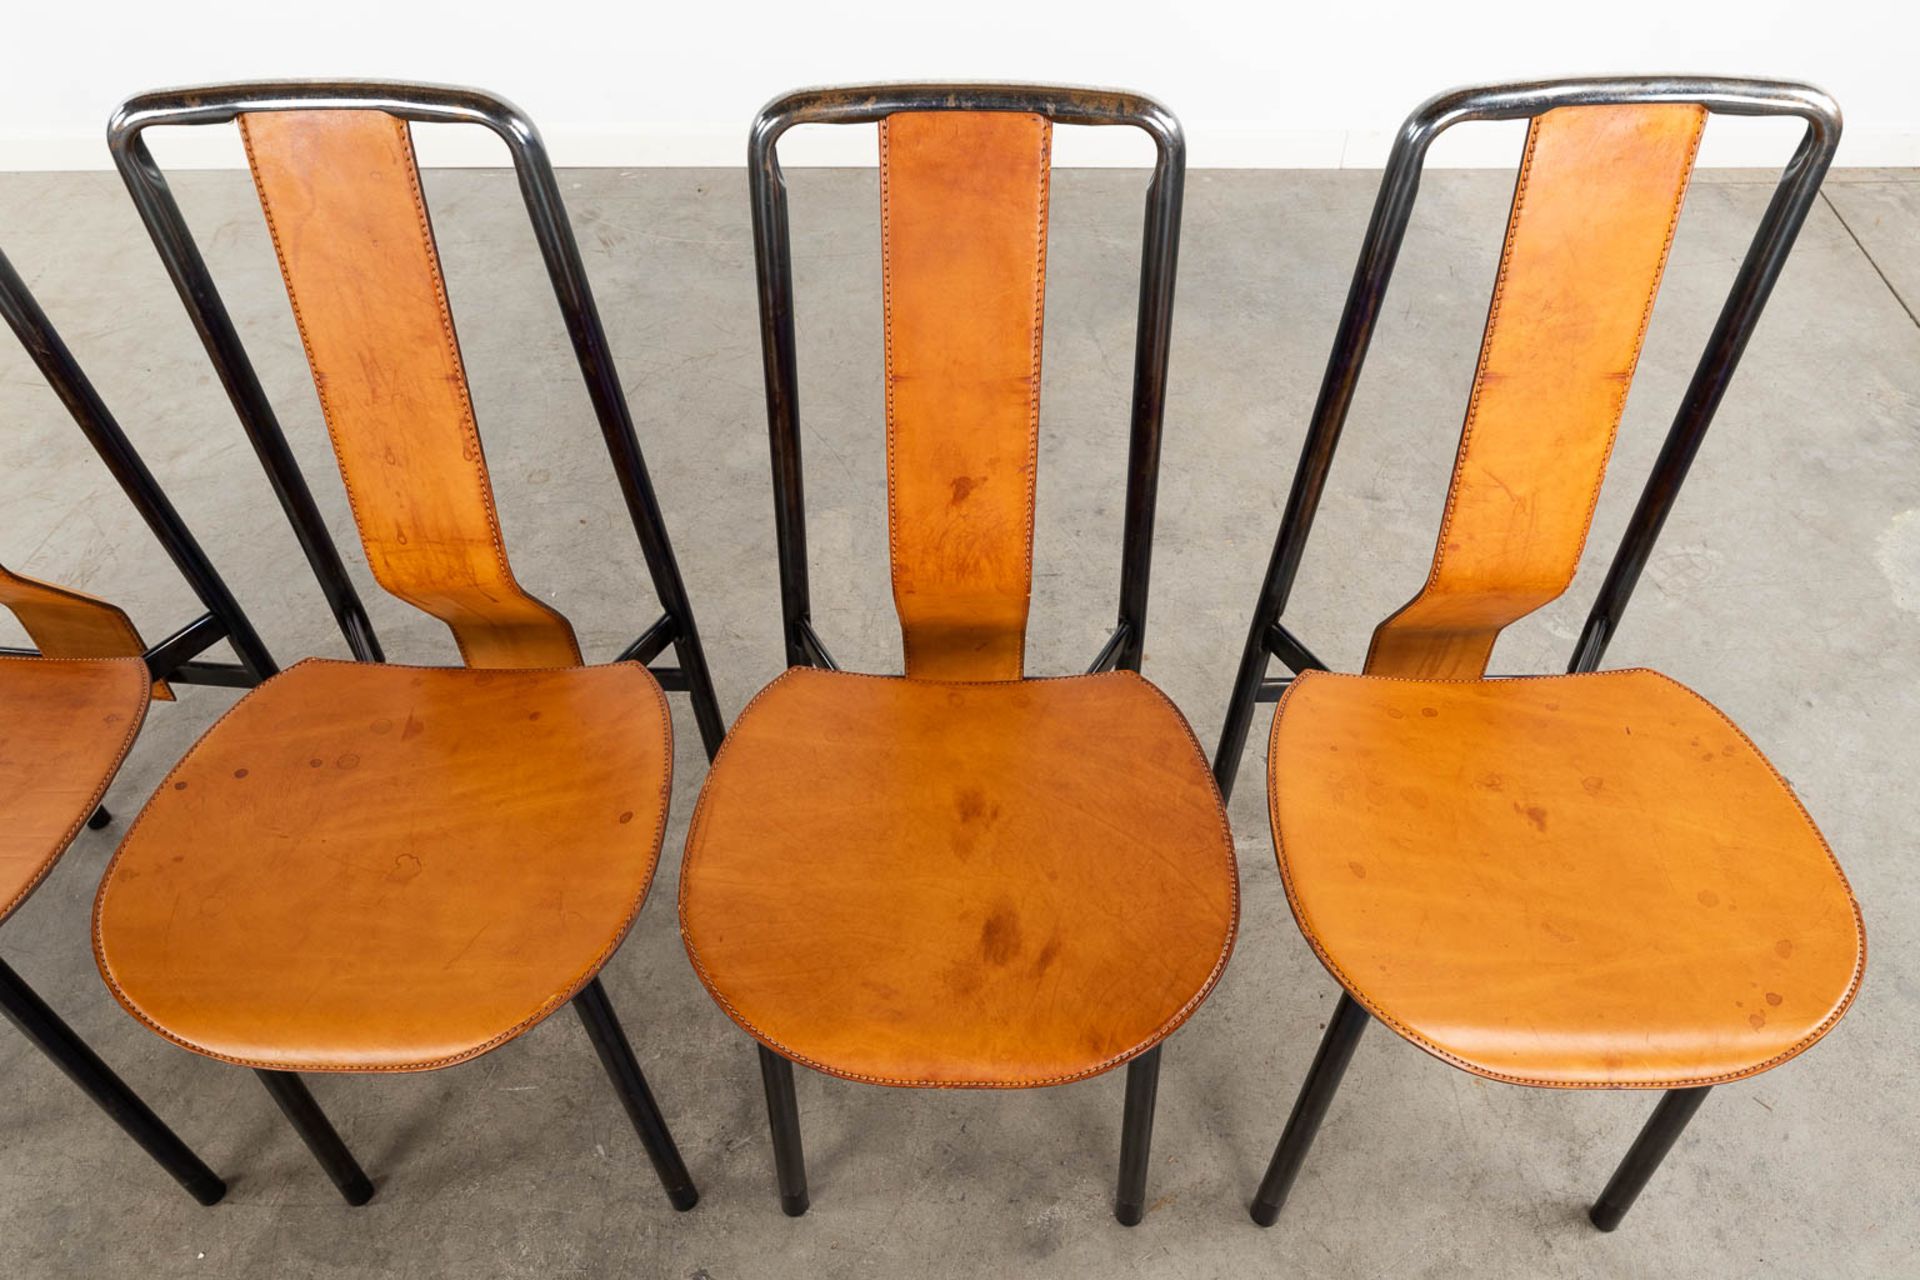 Achille CASTIGLIONI (1918-2002) 'Irma' for Zanotta, 6 chairs. (D:49 x W:40 x H:90 cm) - Image 5 of 17